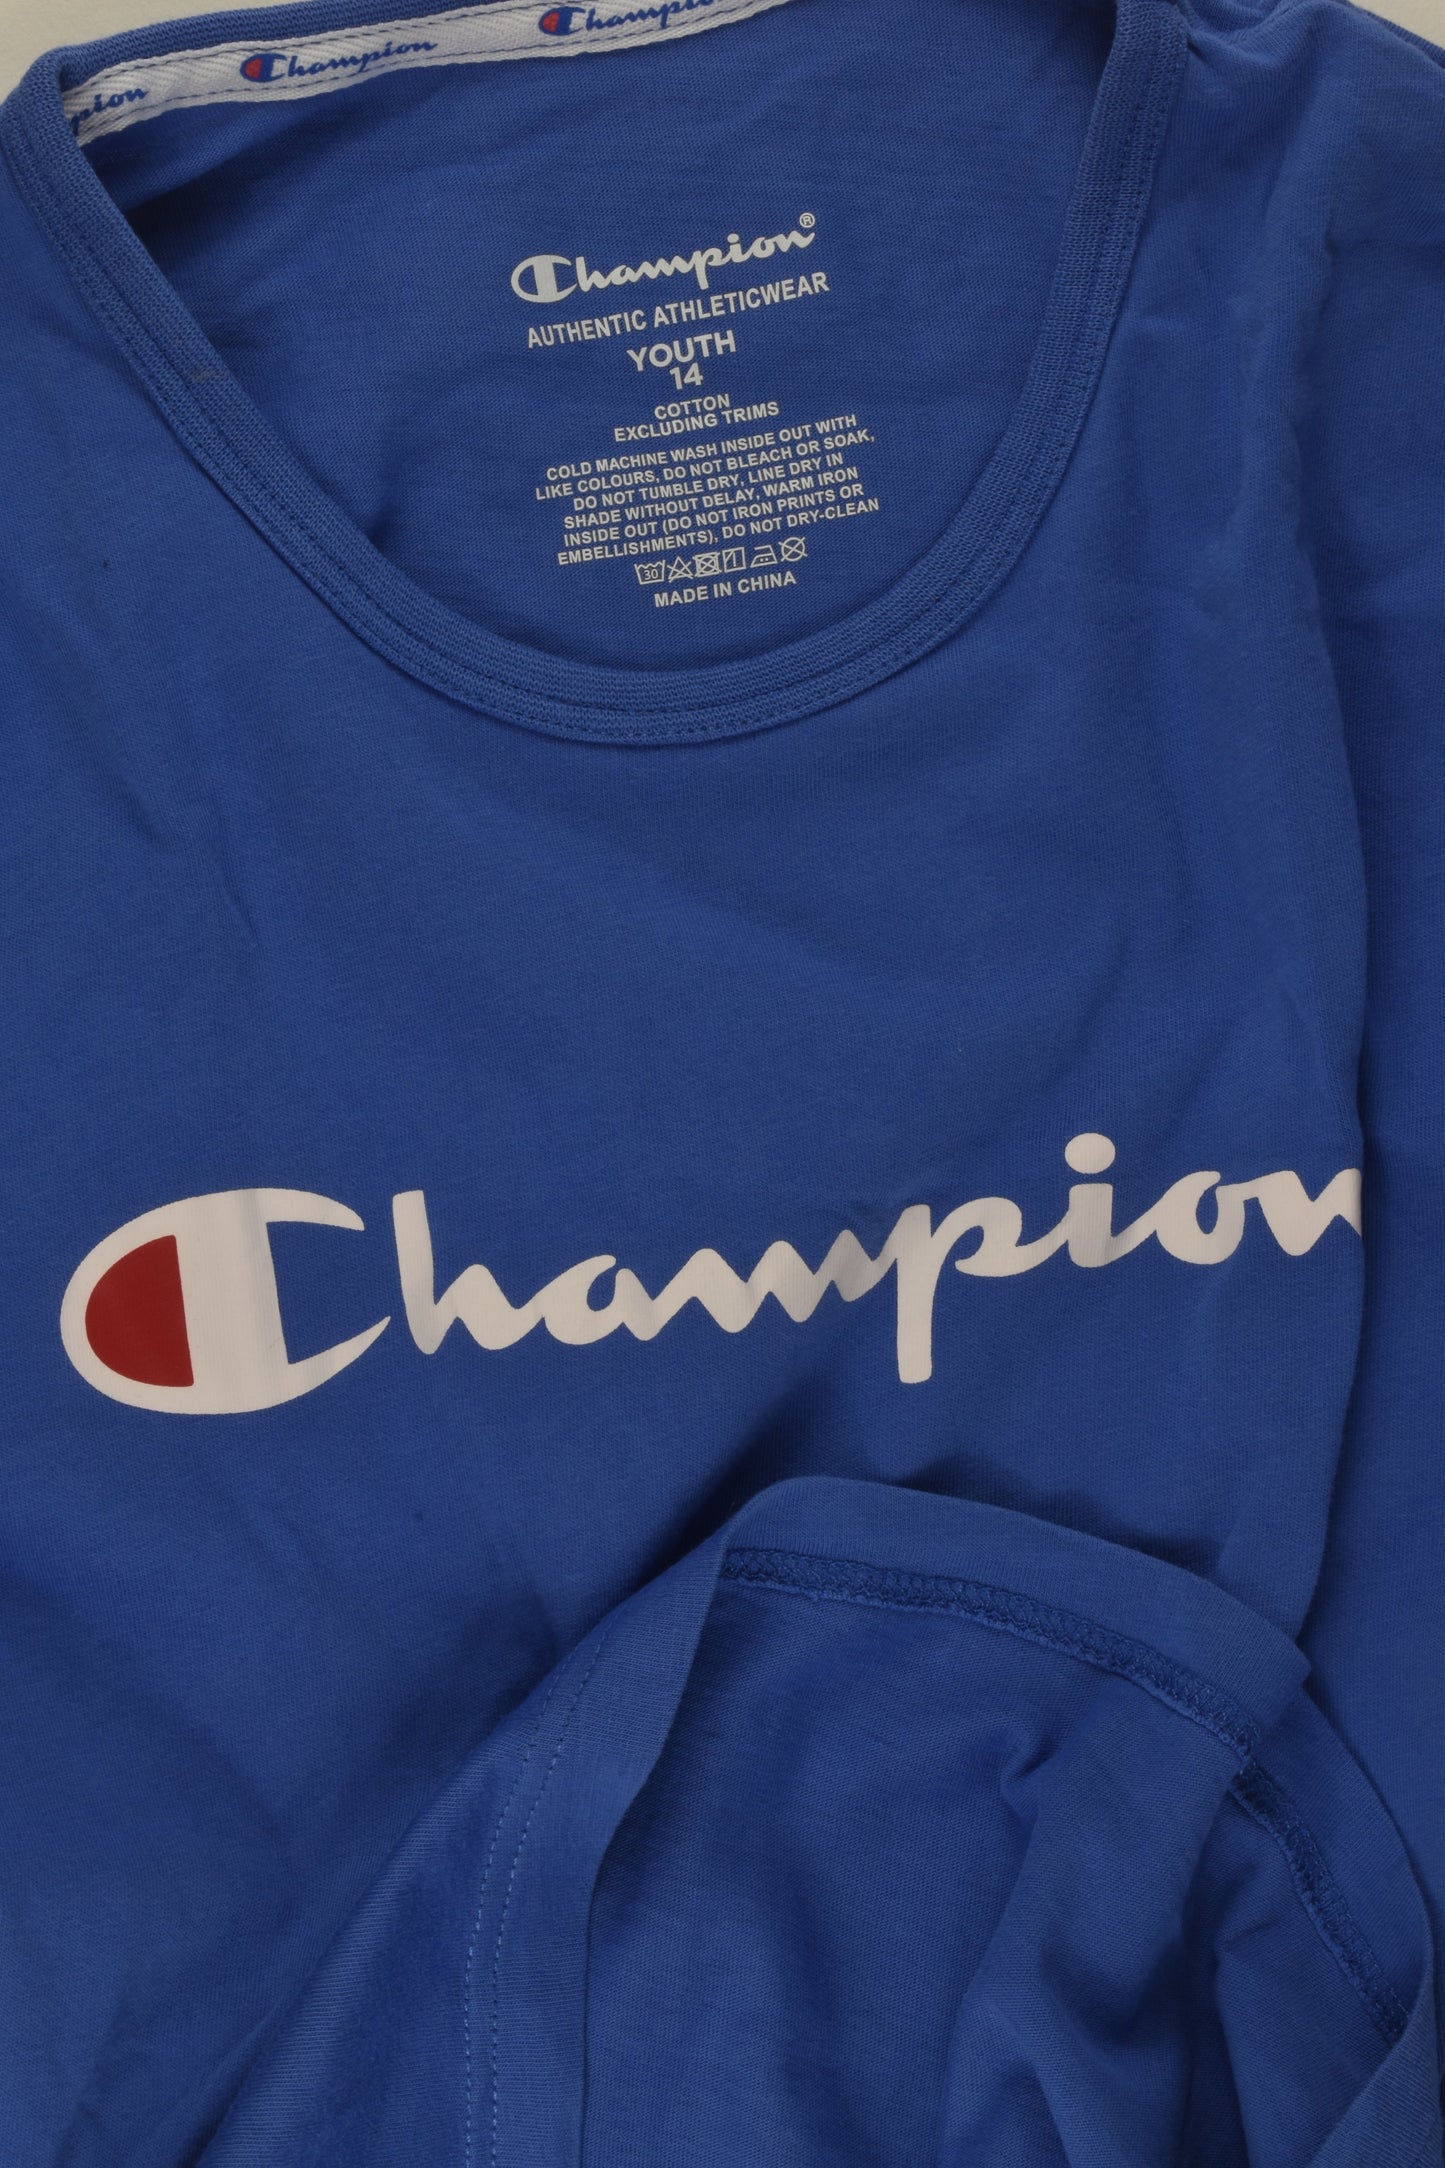 Champion Size 14 T-shirt